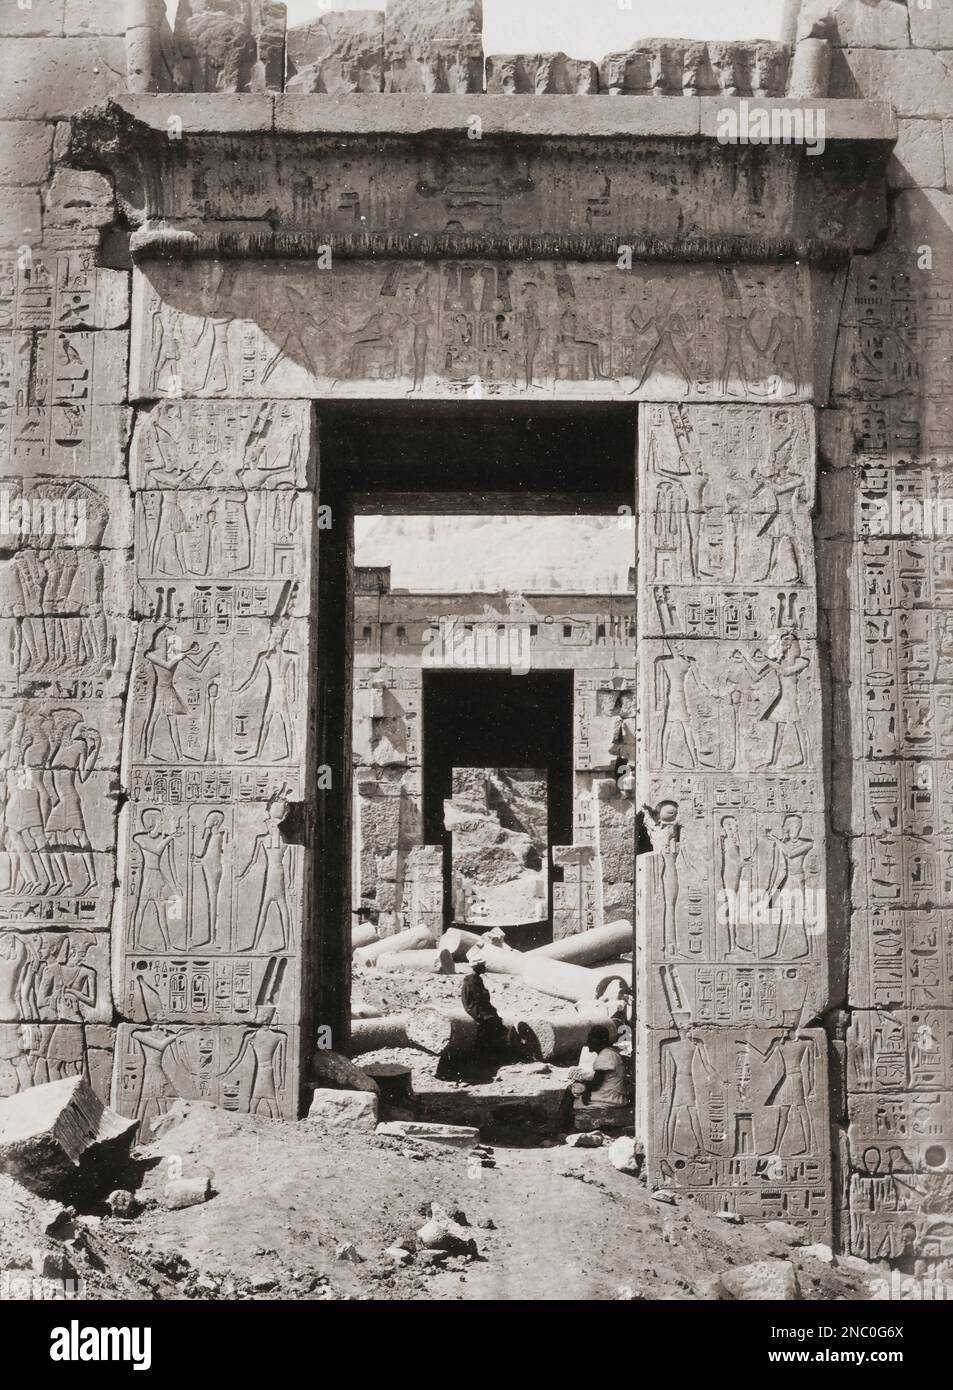 Pylône, ou porte monumentale, au complexe archéologique Medinet Habu près de Louxor, en Égypte. Après une photographie du milieu du 19th siècle par le photographe anglais Francis Frith. Banque D'Images